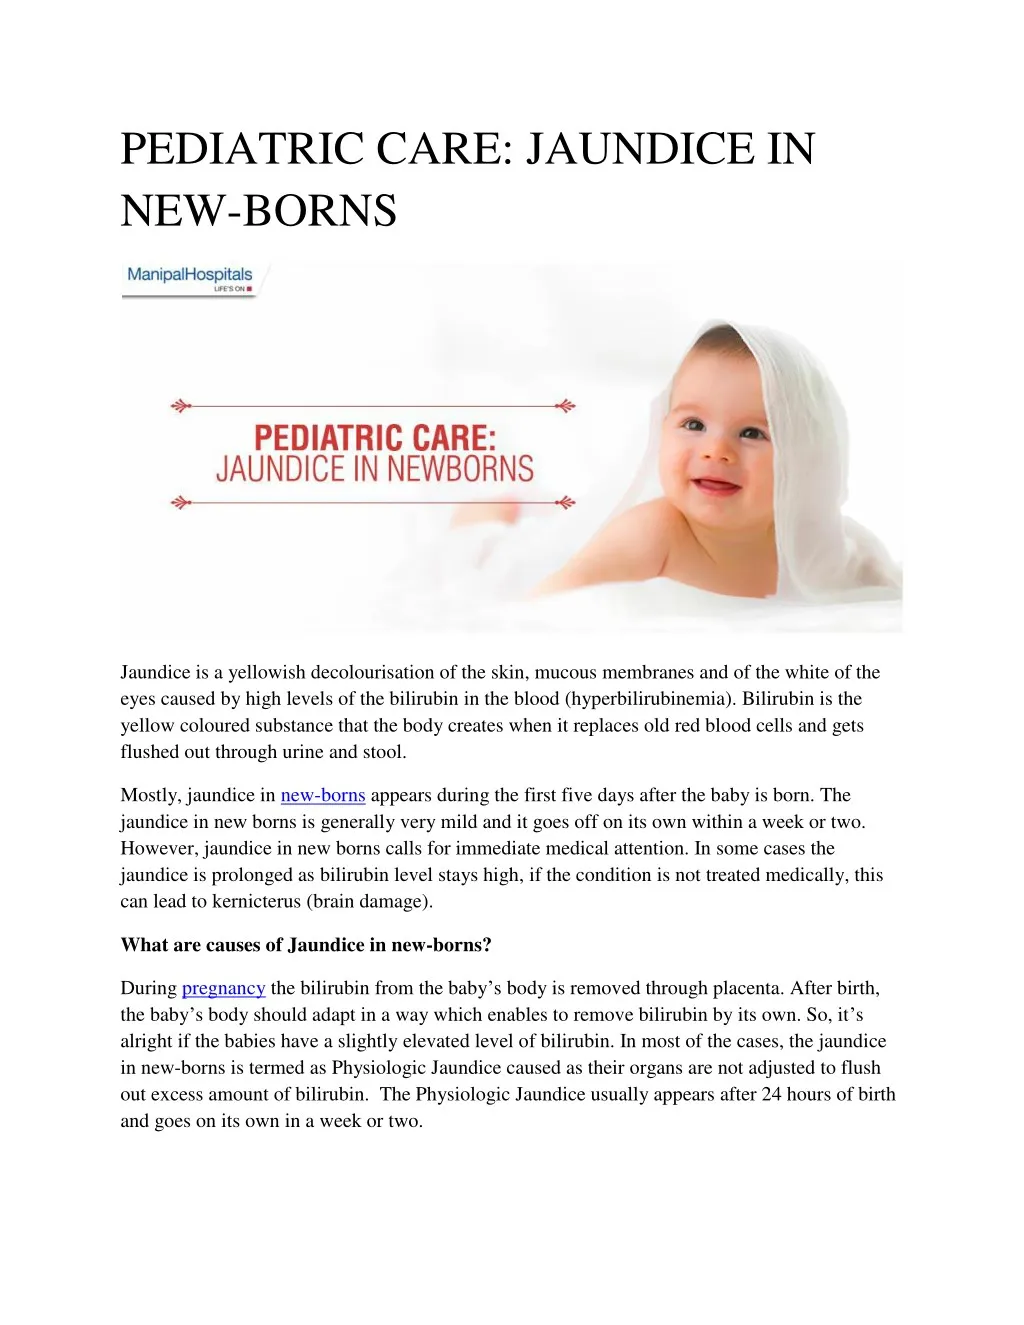 pediatric care jaundice in new borns